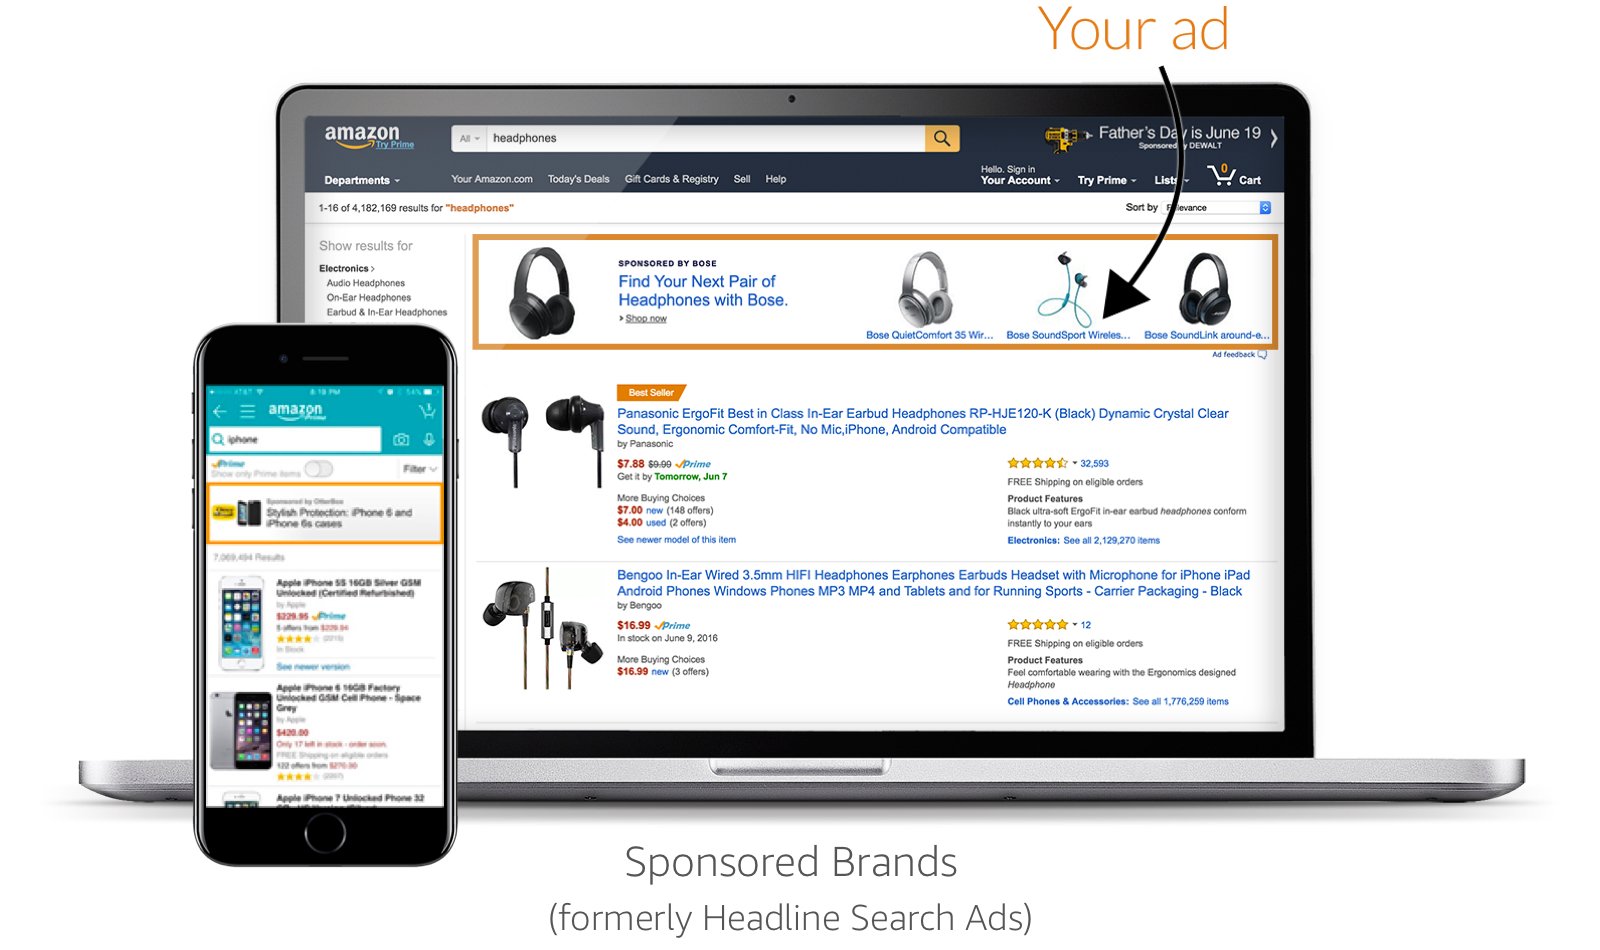 Anuncios de marcas patrocinadas en Amazon